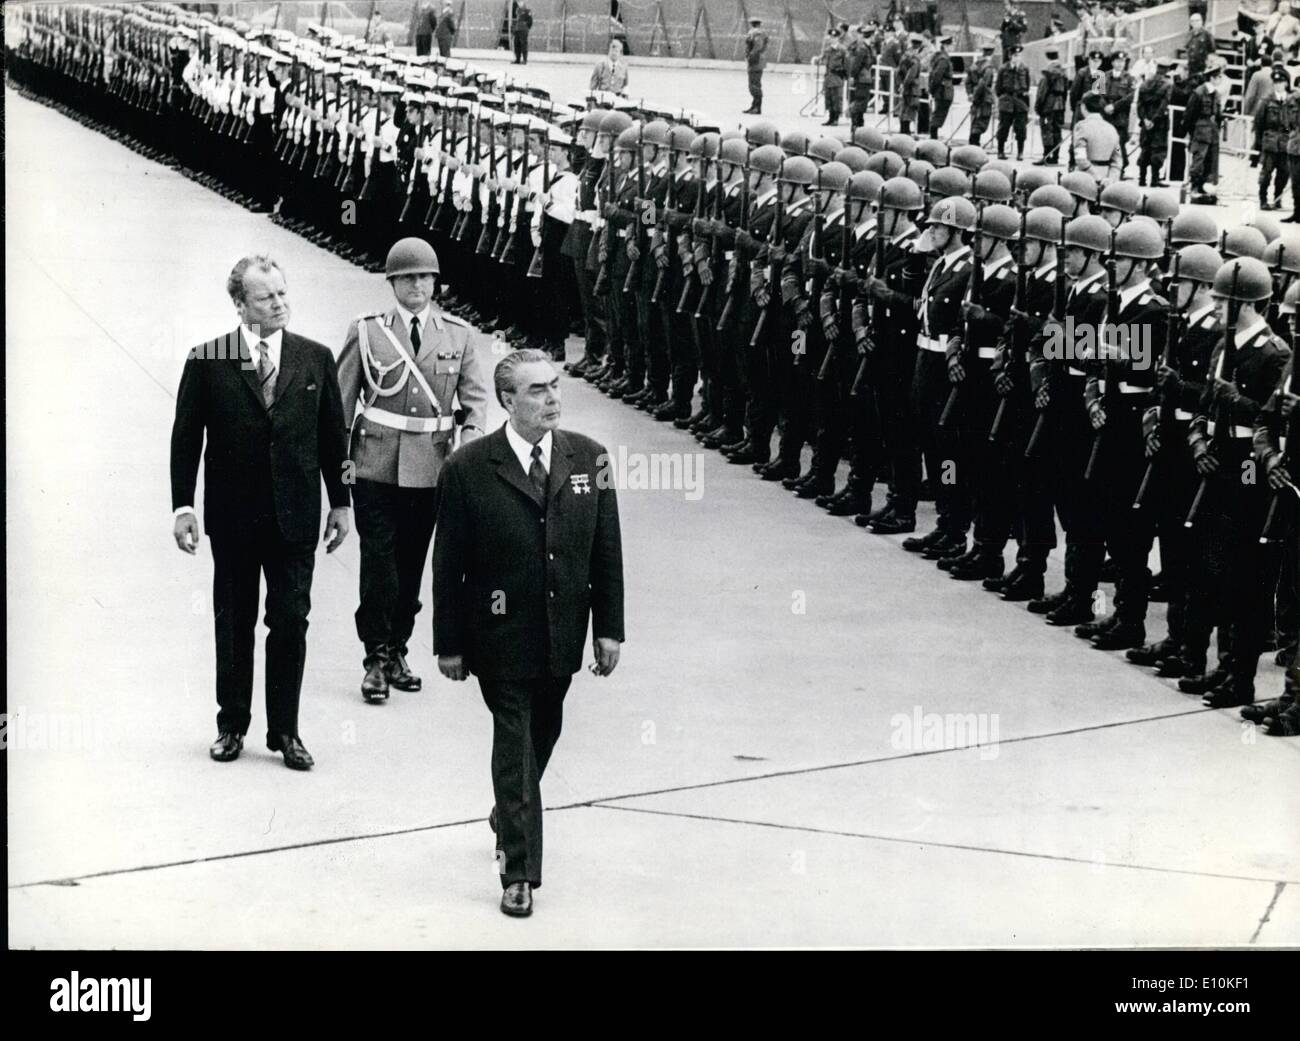 05 maggio 1973 - Brezhnev visita di Stato in Germania Ovest.: il 22.5.73, l'ultimo giorno della sua visita di stato a Bonn, Leonid Brezhnev, primo segretario del comitato centrale dell'URSS Partito Comunista è arrivato a Bonn il 18.5.1973. Mostra fotografica di Brandt e Brezhnev tenendo il riesame la formazione della Bundeswehr presso l'aeroporto di Colonia/Bonn. Foto Stock